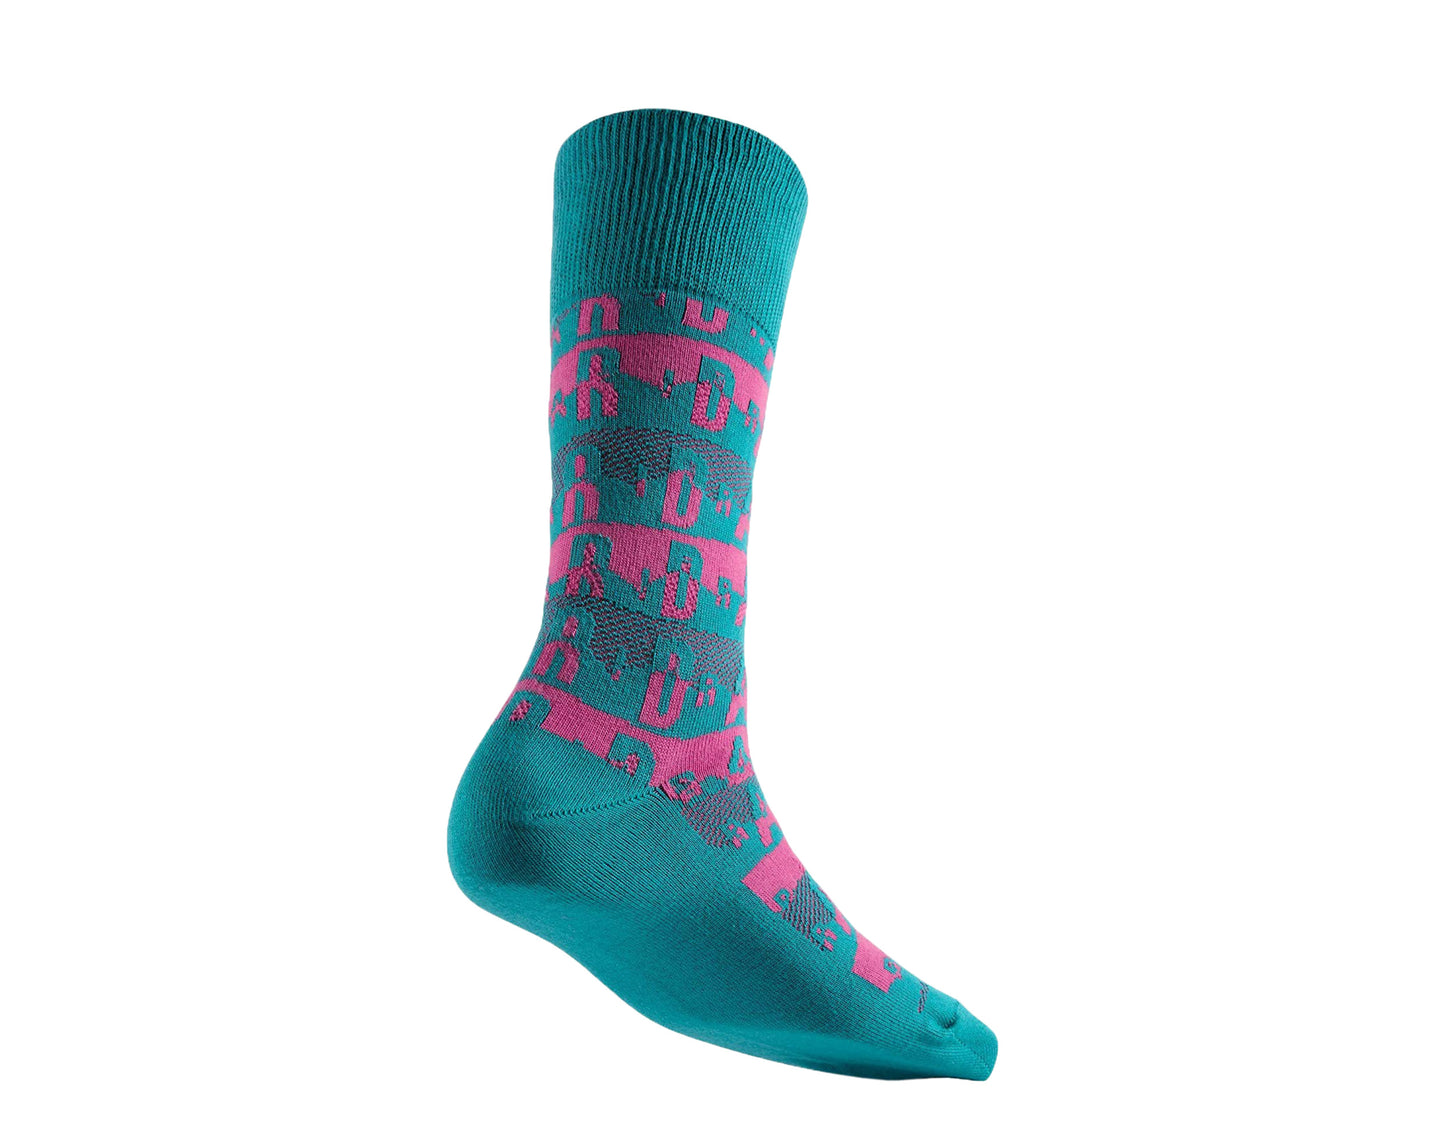 Nike Air Jordan Printed Crew Tropical Teal/Fusion Pink Socks 631714-309